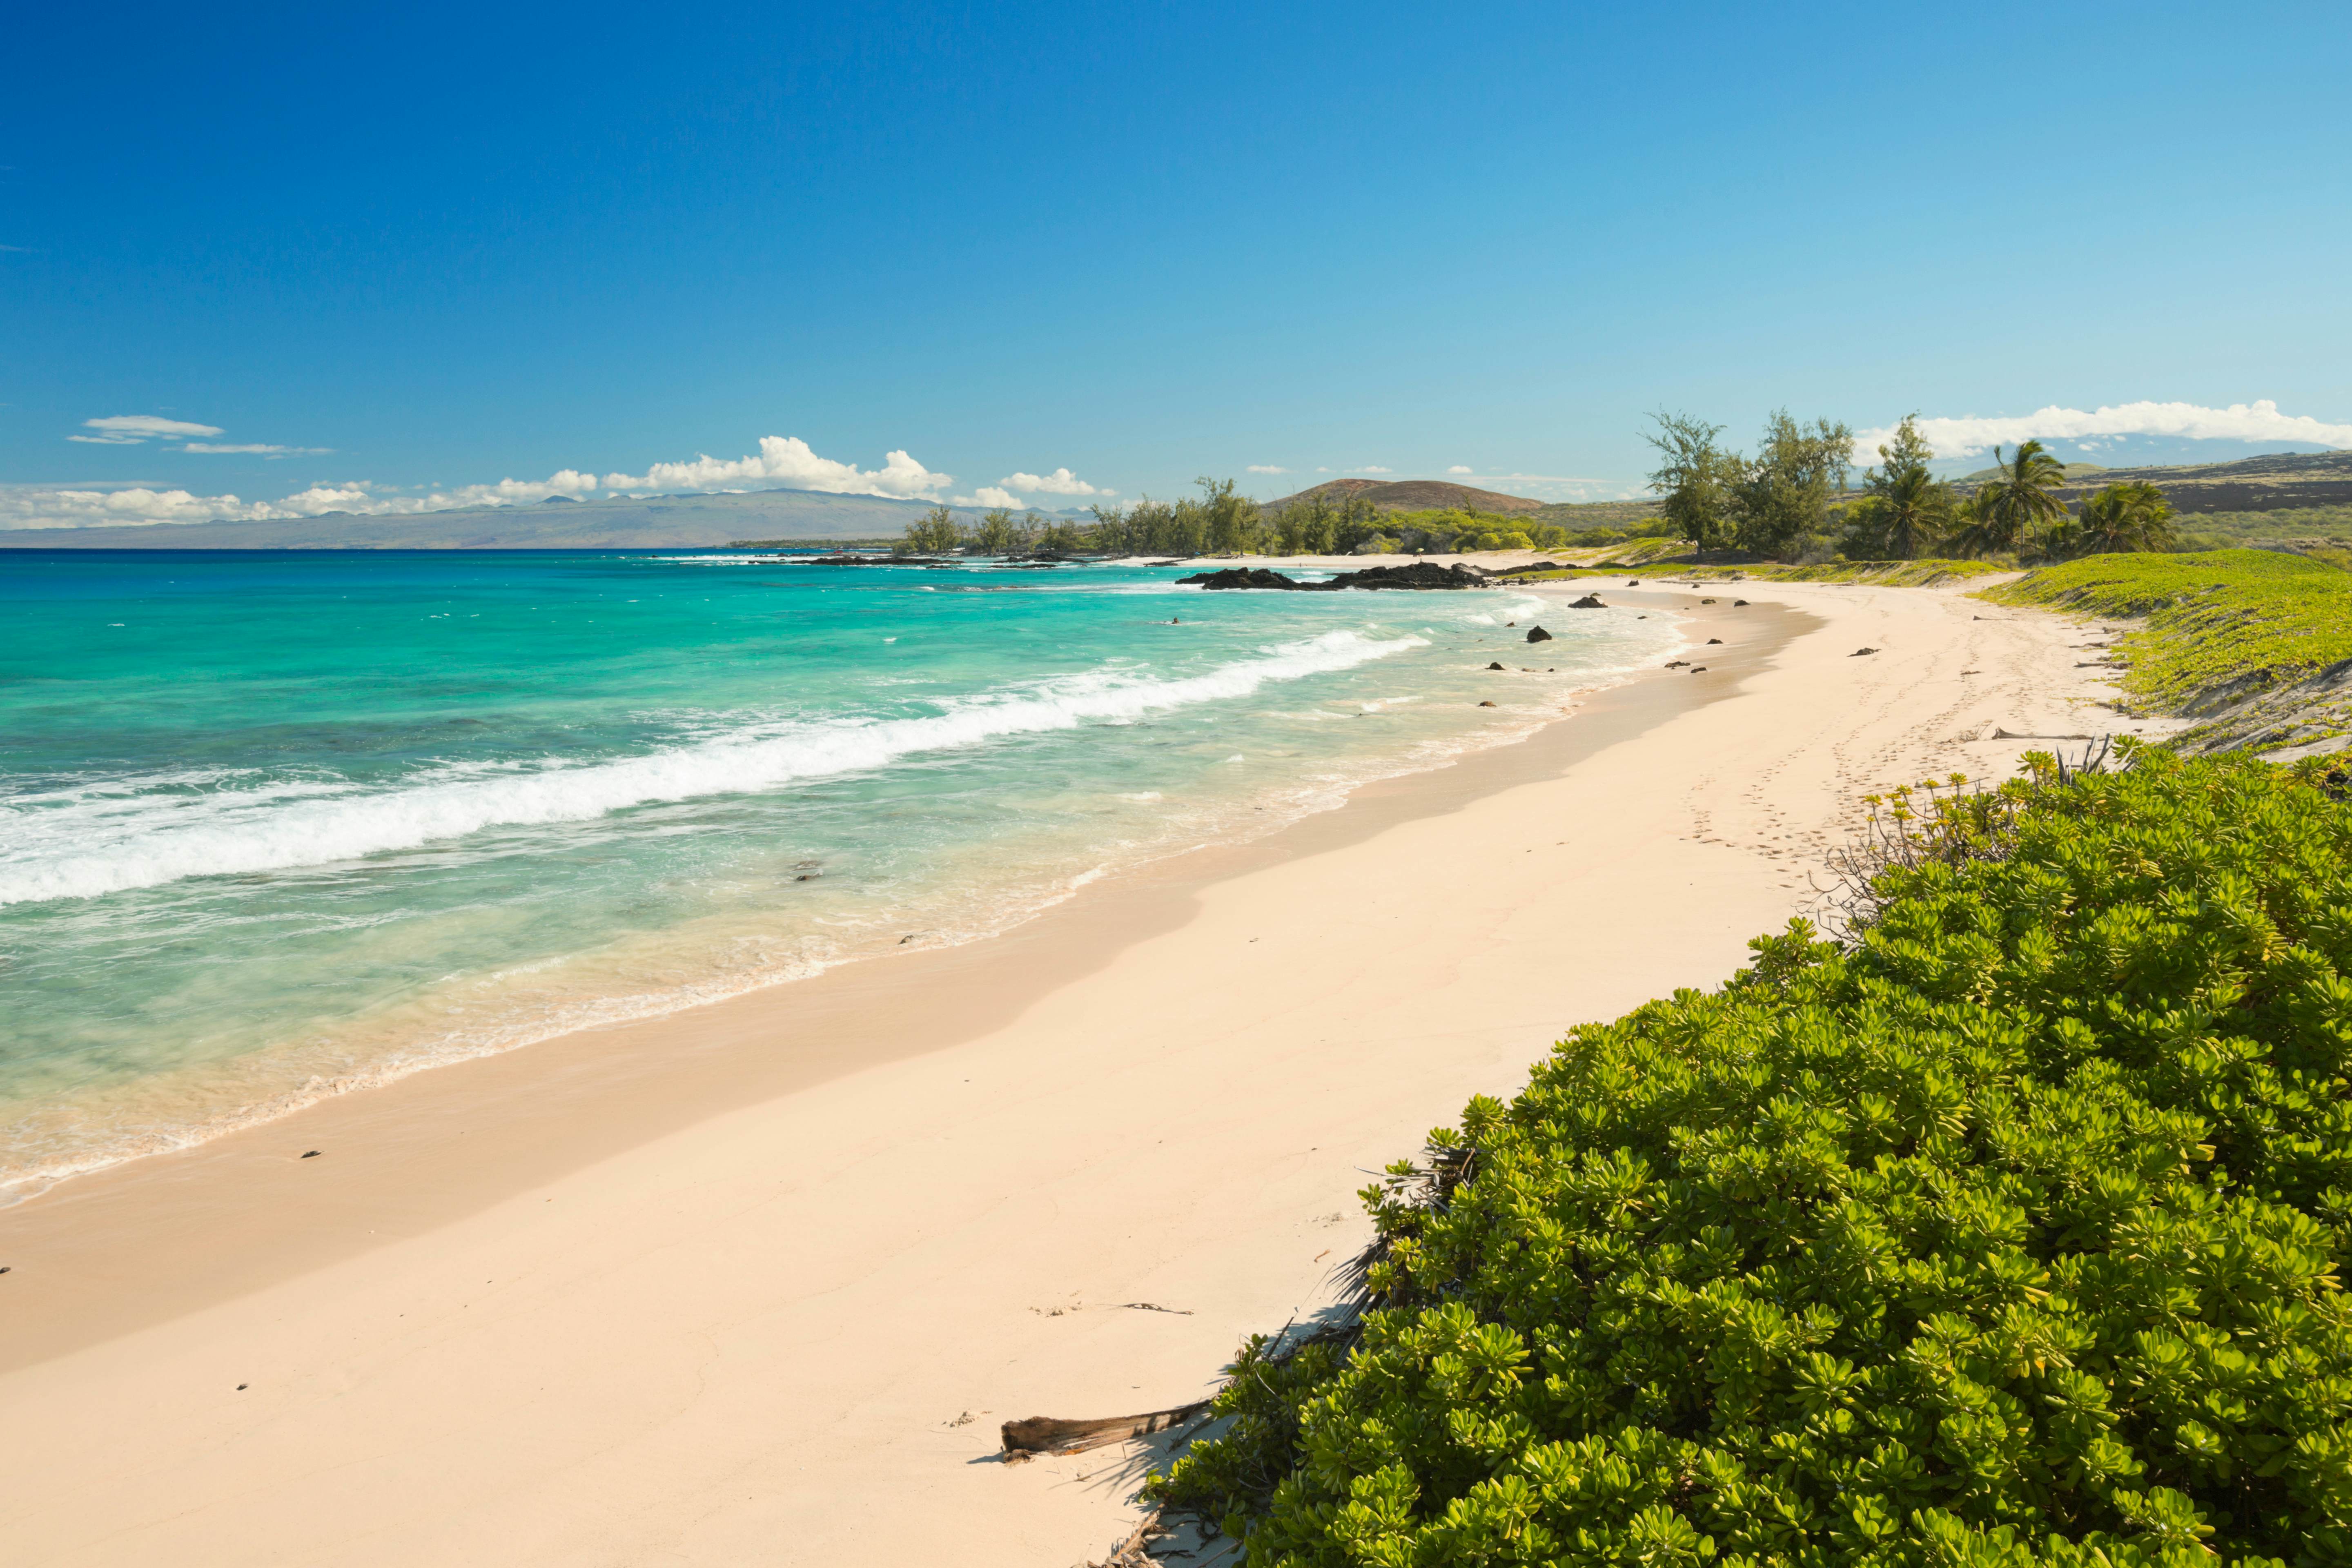 Why Choose Big Island for Your Hawaiian Getaway?